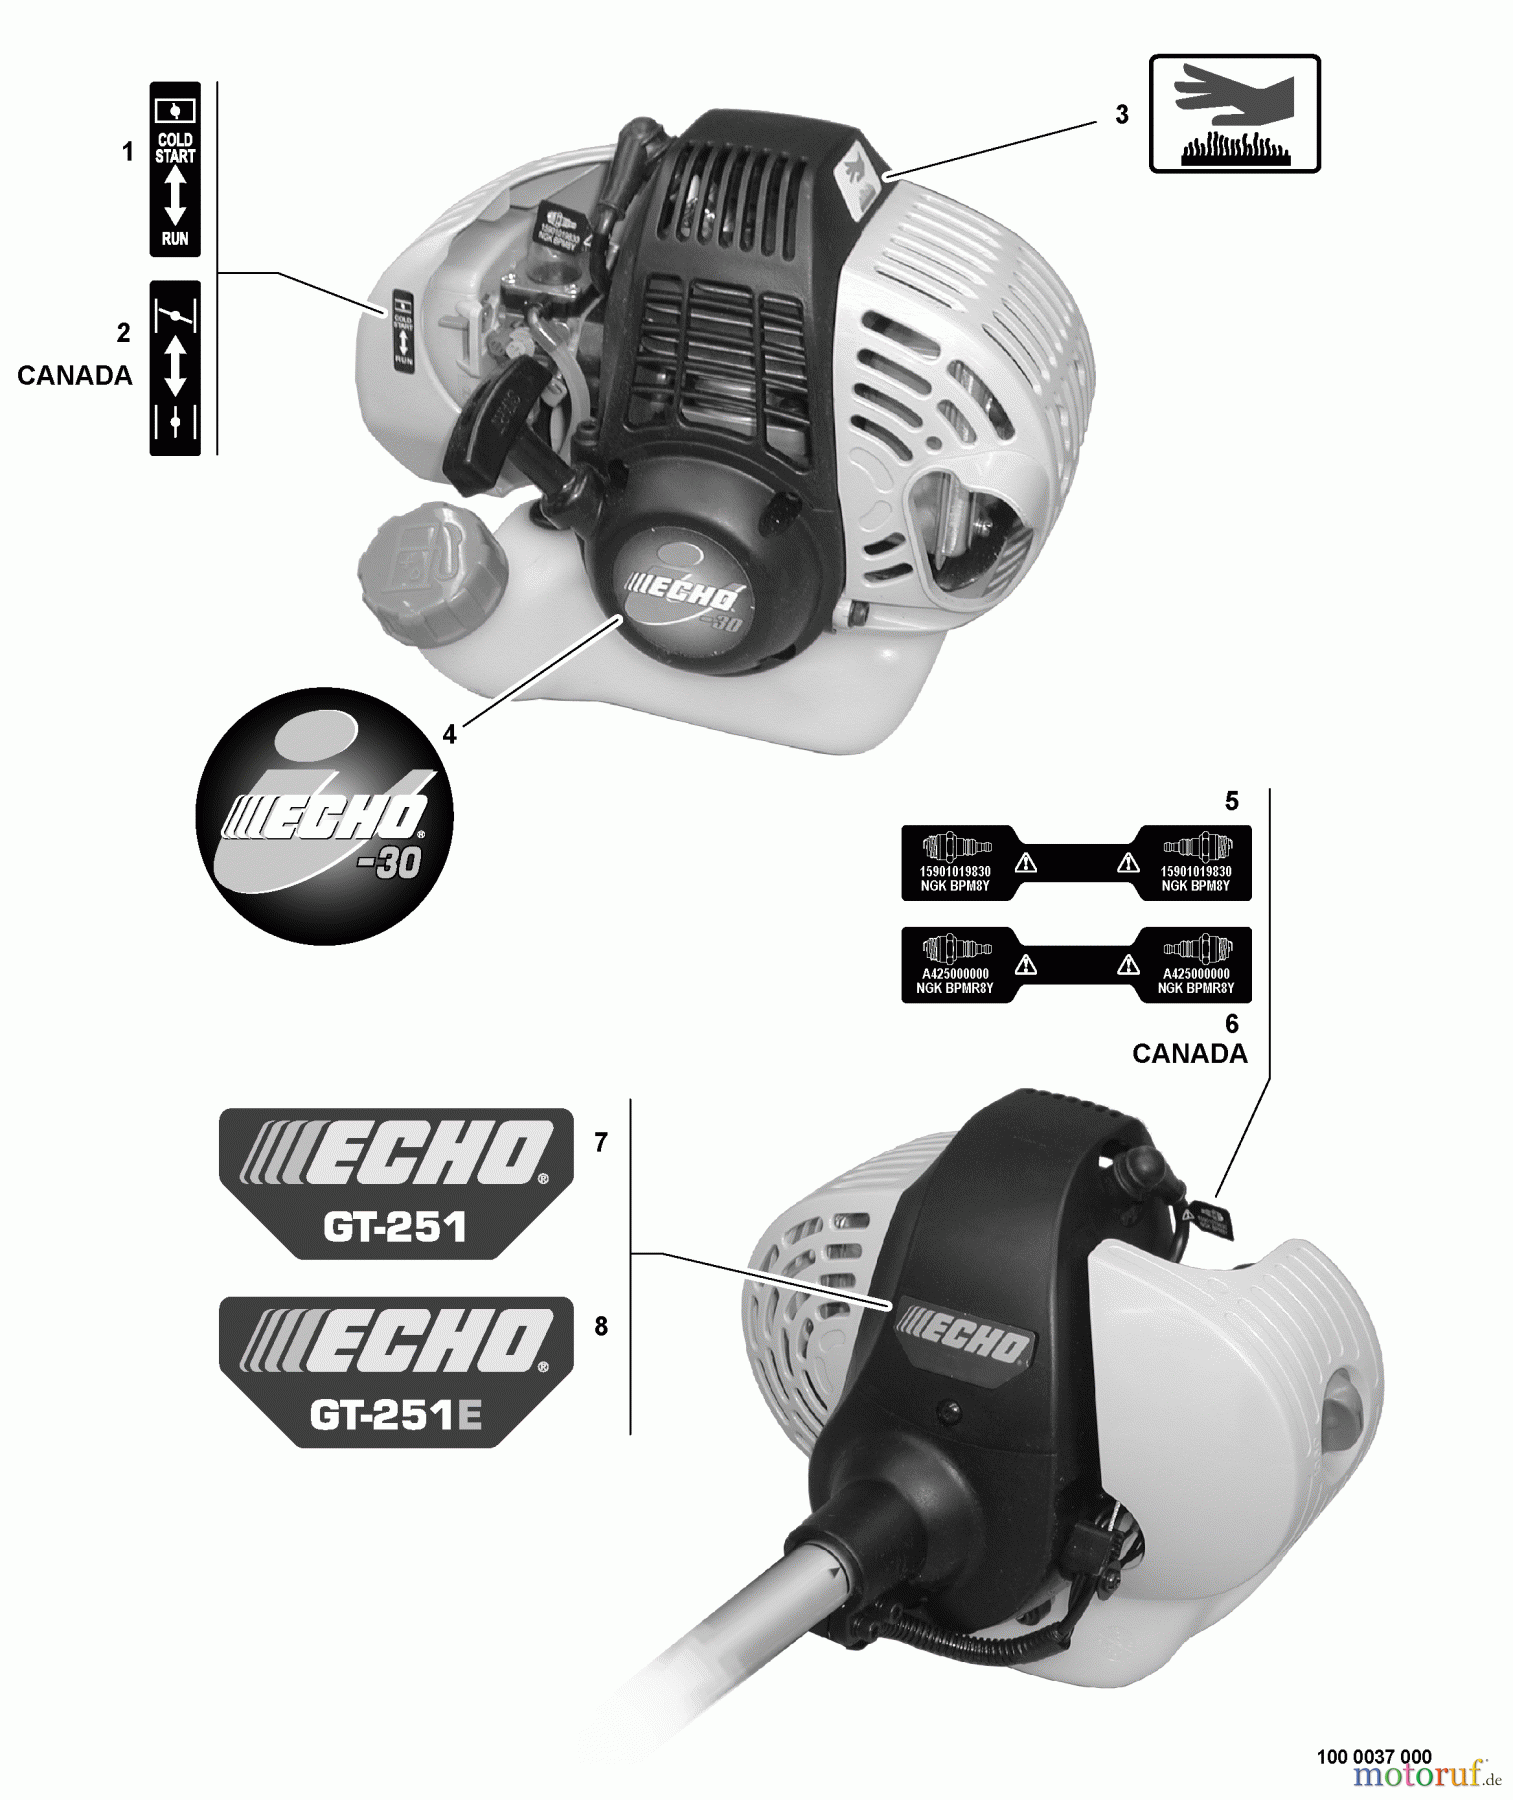  Echo Trimmer, Faden / Bürste GT-251 - Echo String Trimmer, S/N:S65011001001 - S65011999999 Labels